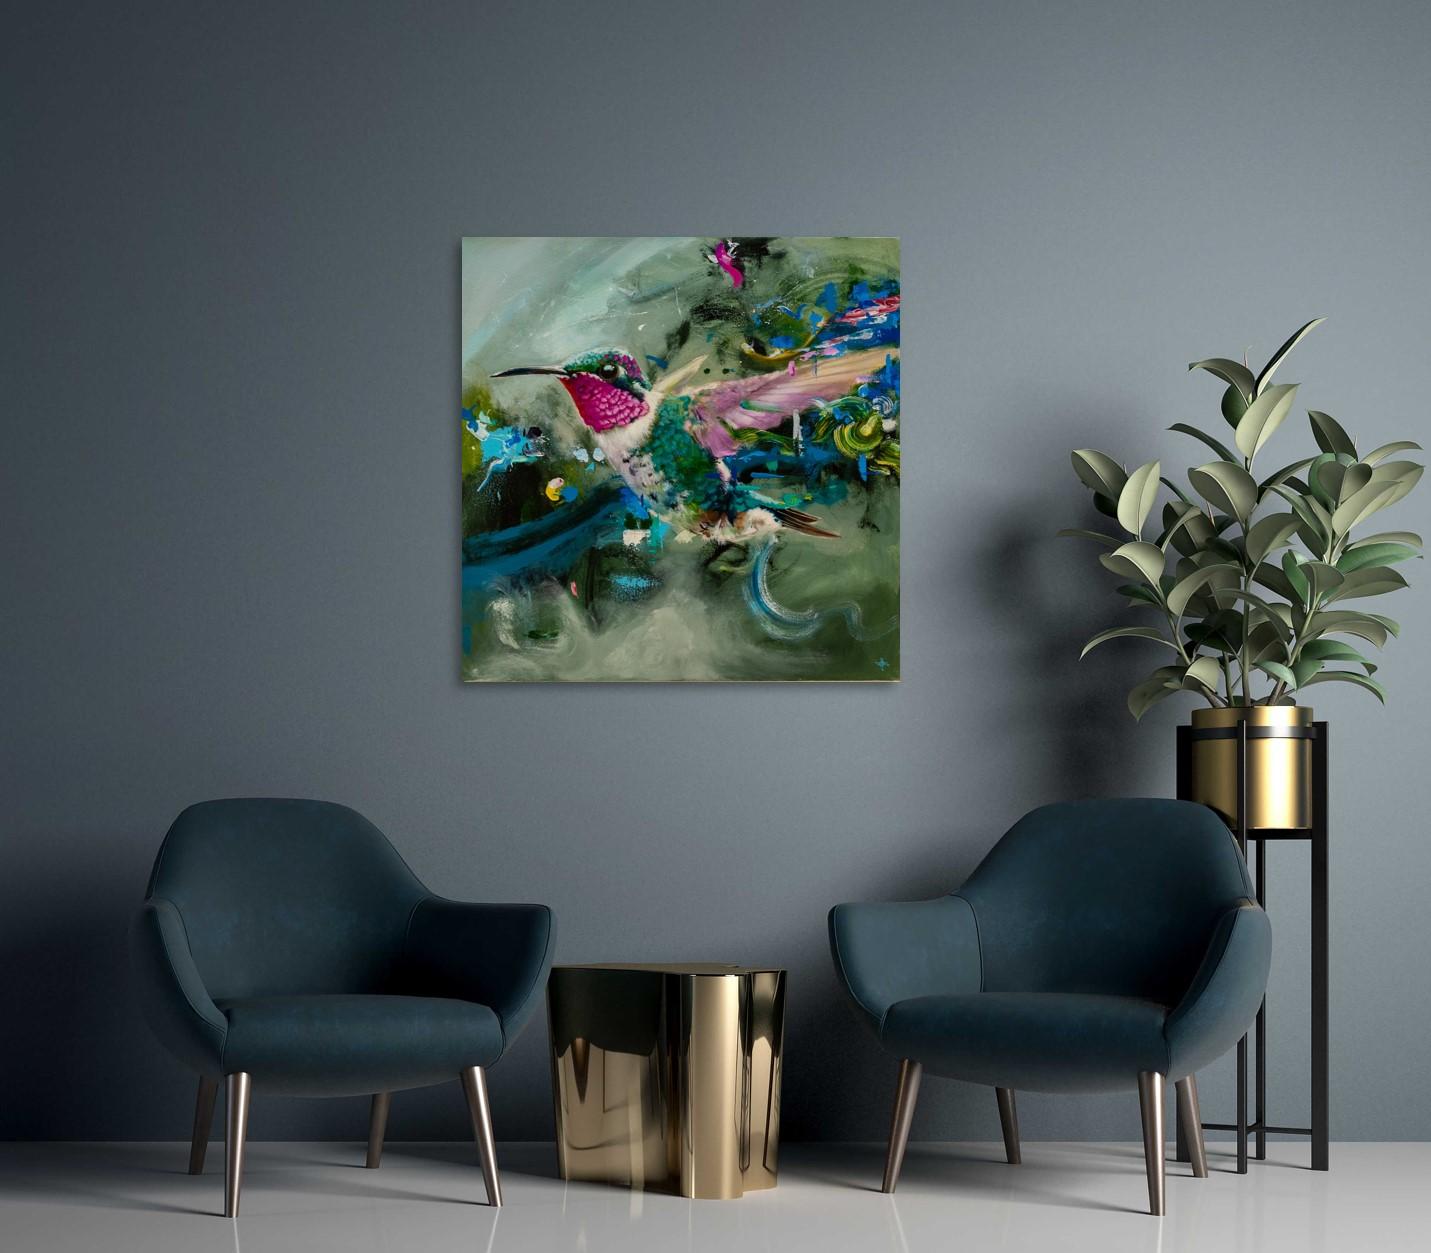 Keng Wai Lees herrlich reiche florale Impressionen sind eine Synergie aus dekorativen Tableaus und der Darstellung seiner Erinnerungen und Vorstellungen in Farbe auf Leinwand.

